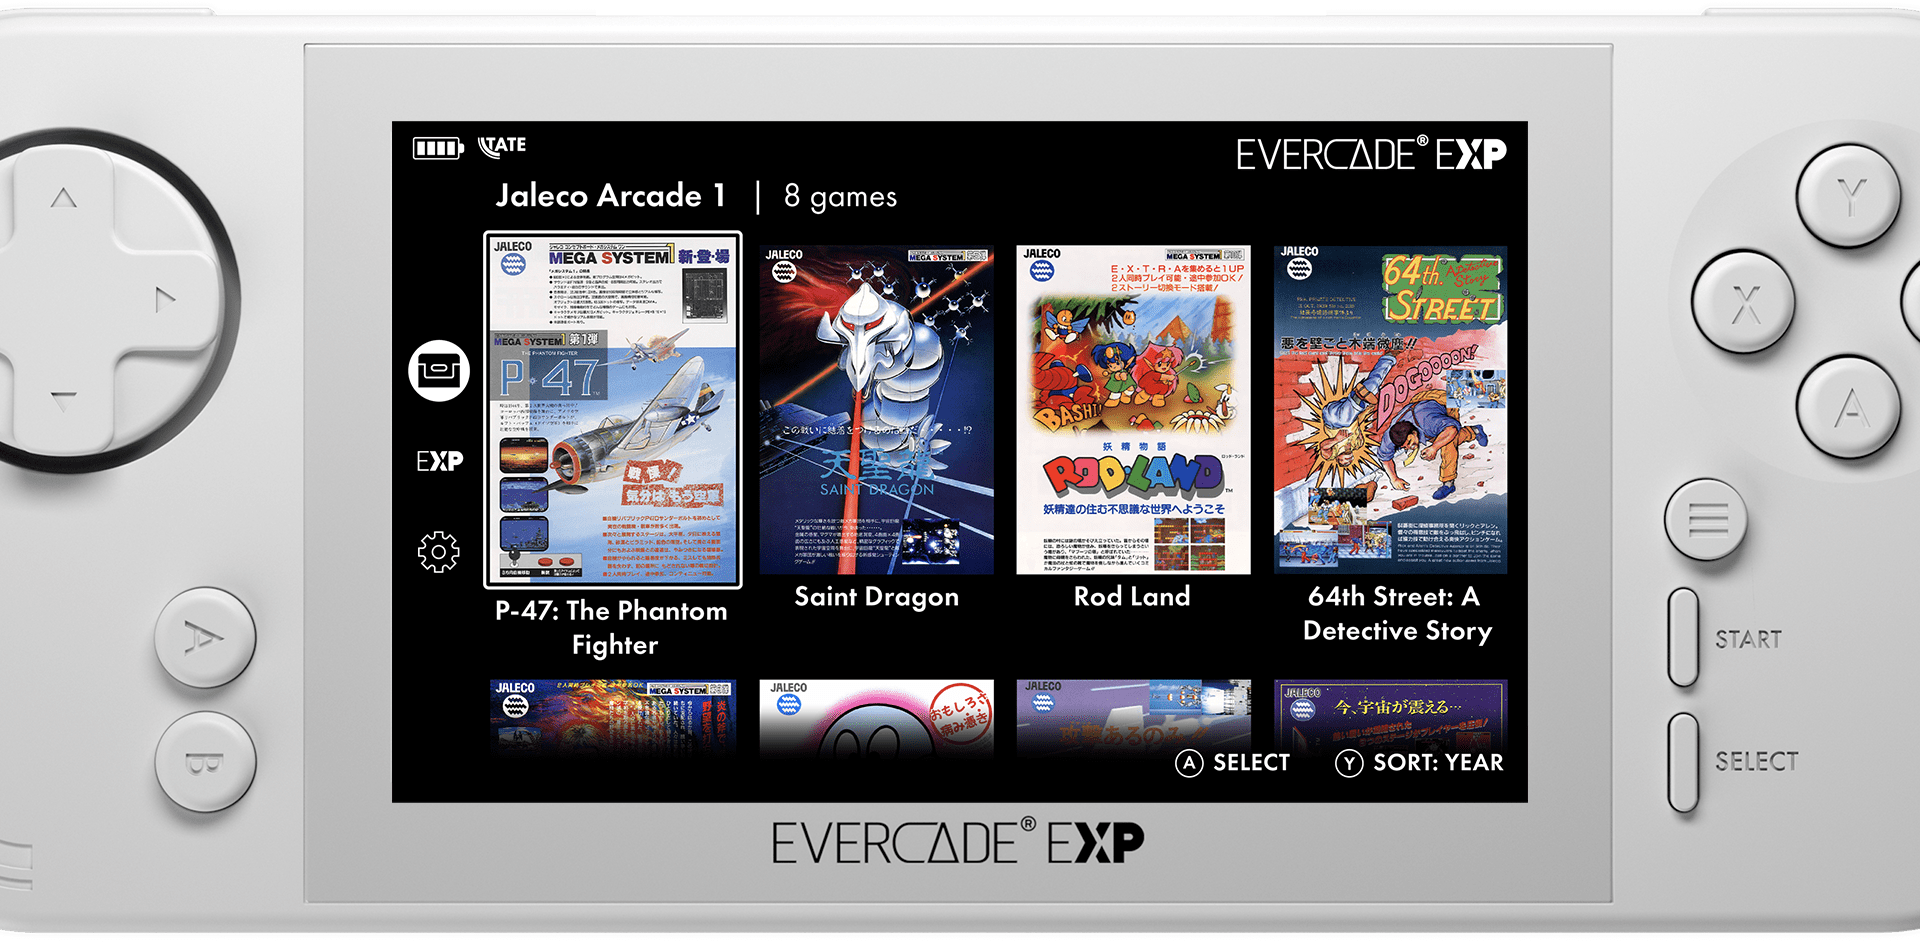 EXP : Evercade